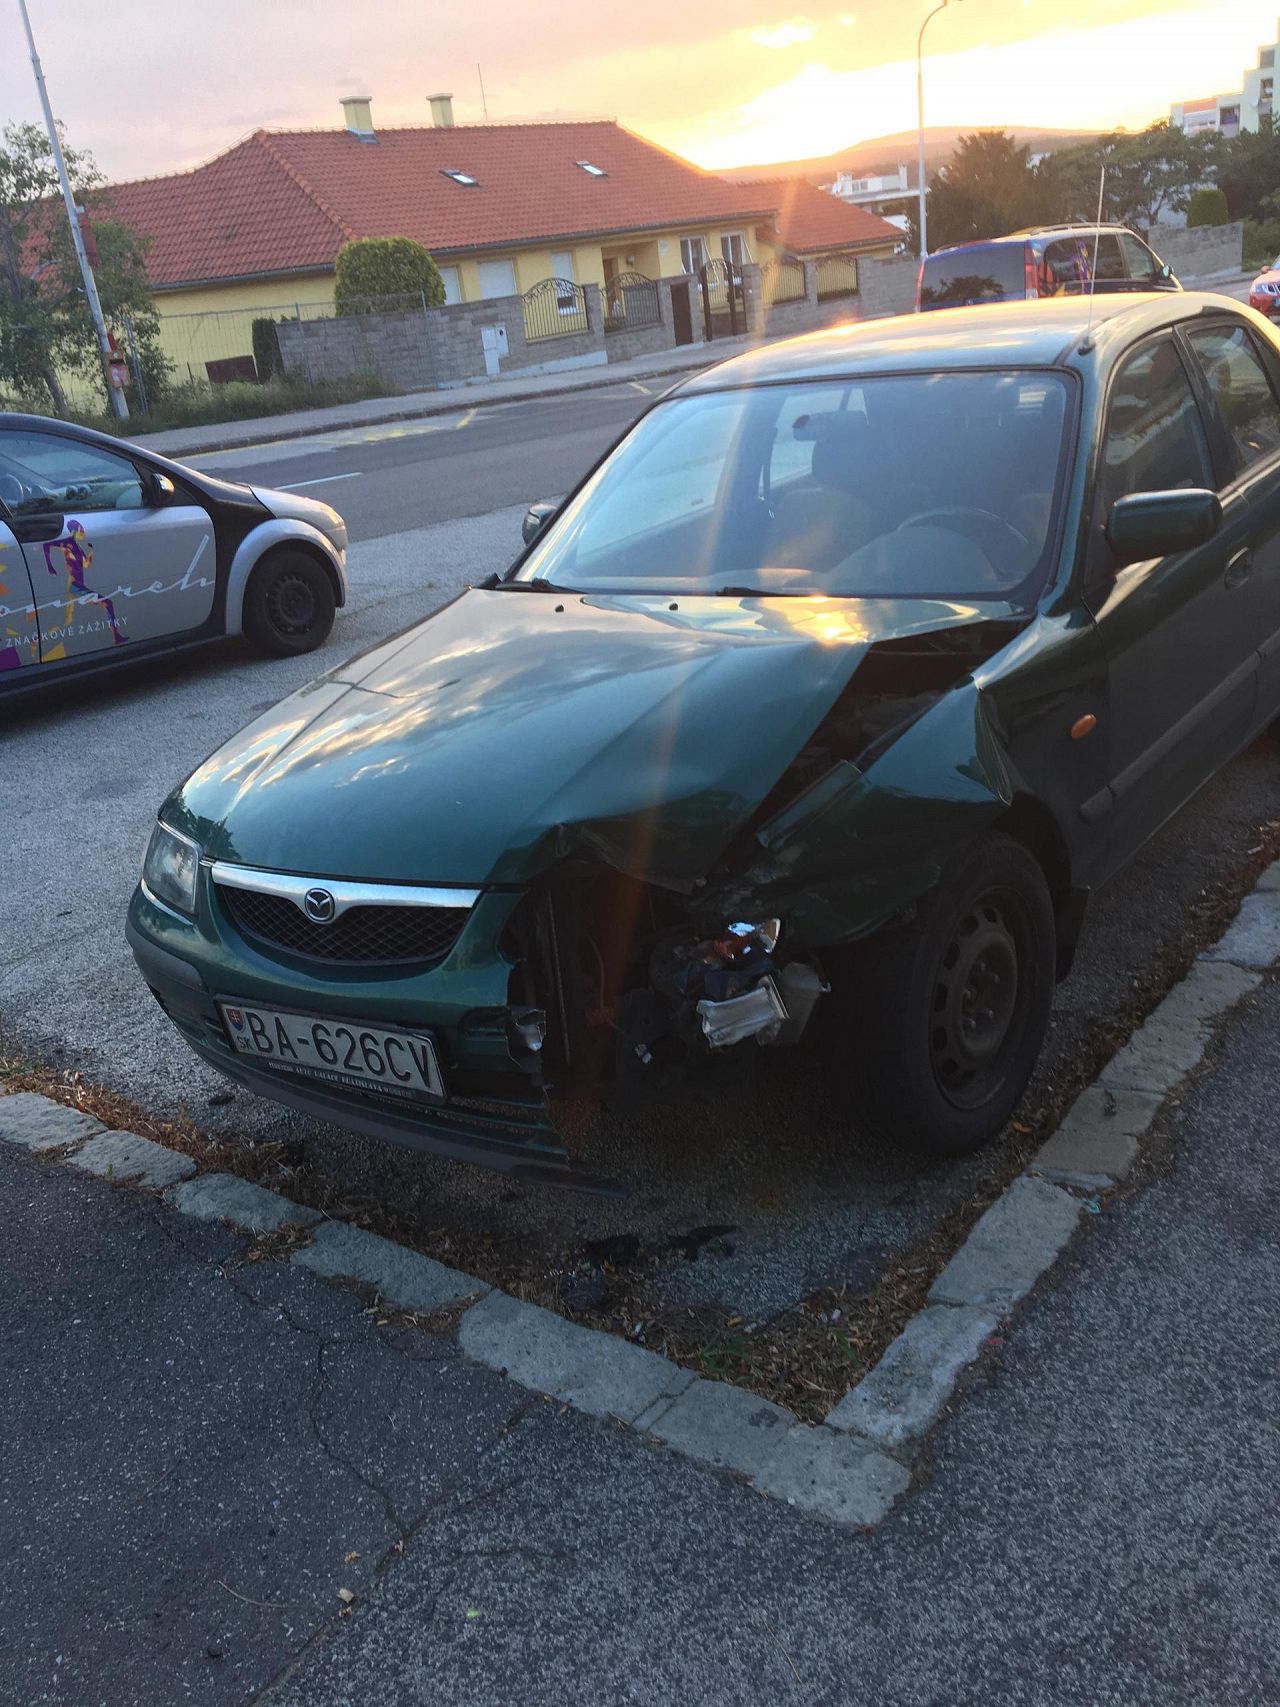 Nabúrané auto na parkovisku, Staré Mesto, Bratislava | Odkazprestarostu.sk